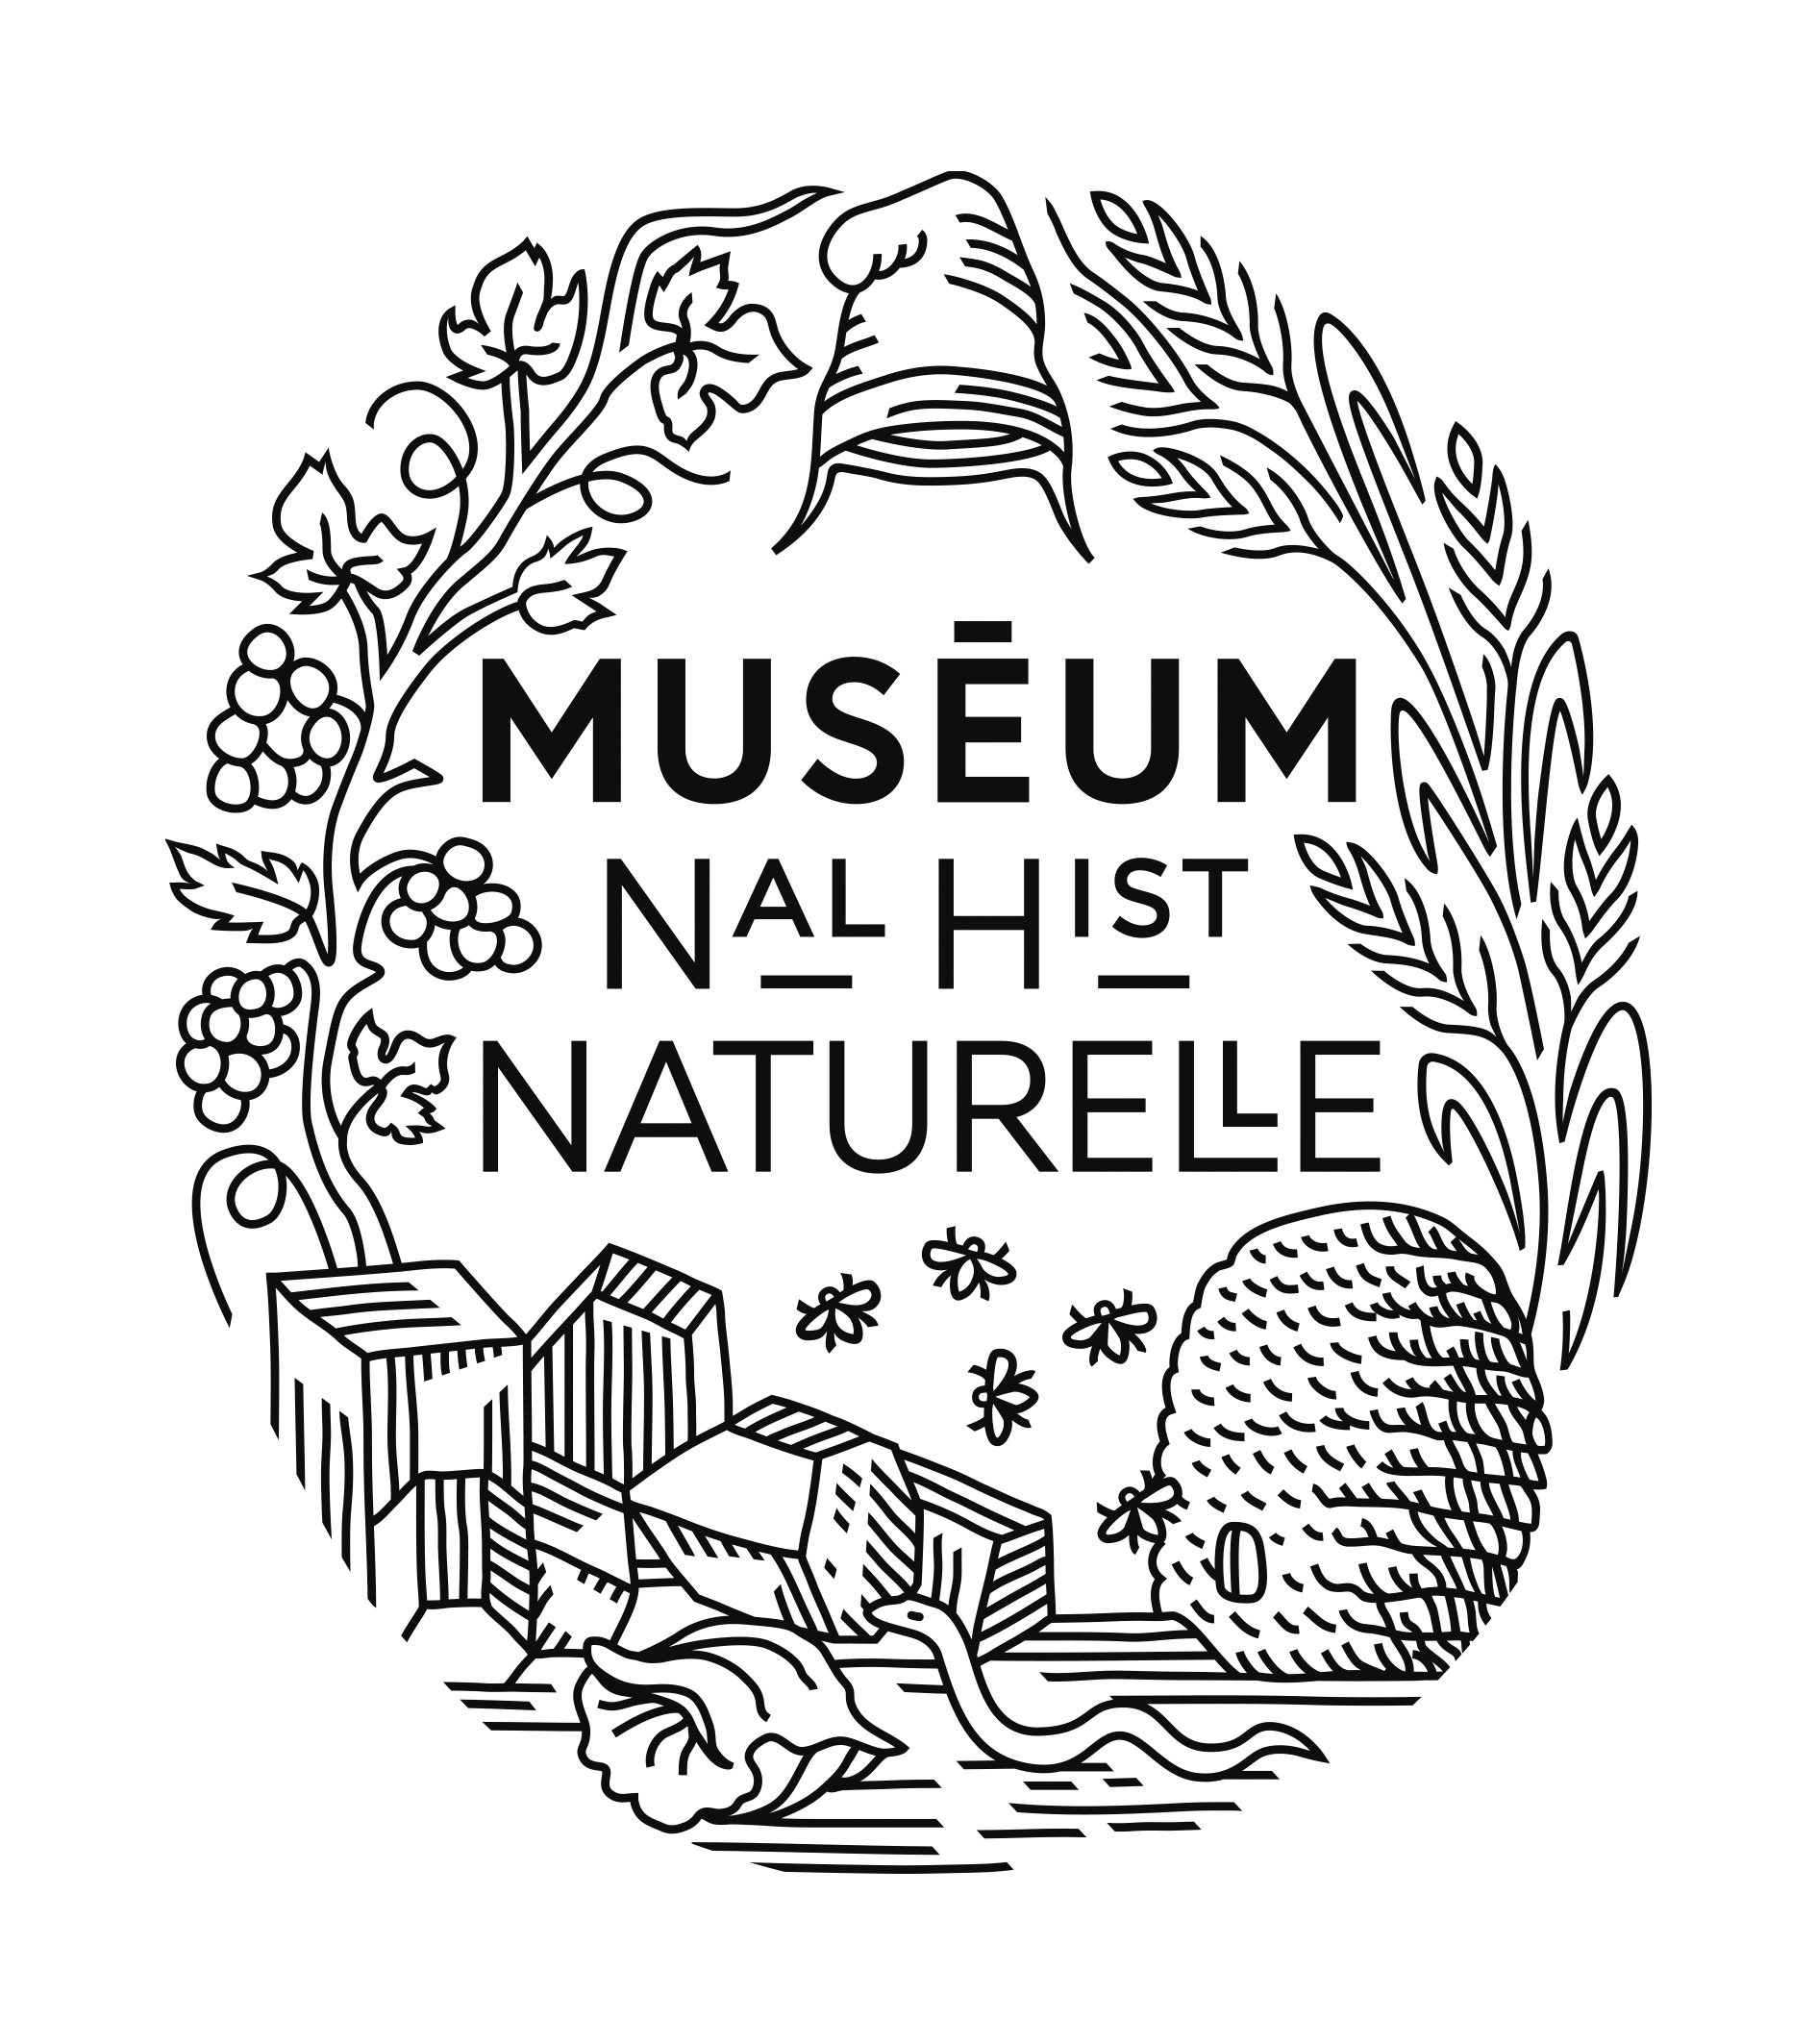 museum-national-d-histoire-naturelle_2